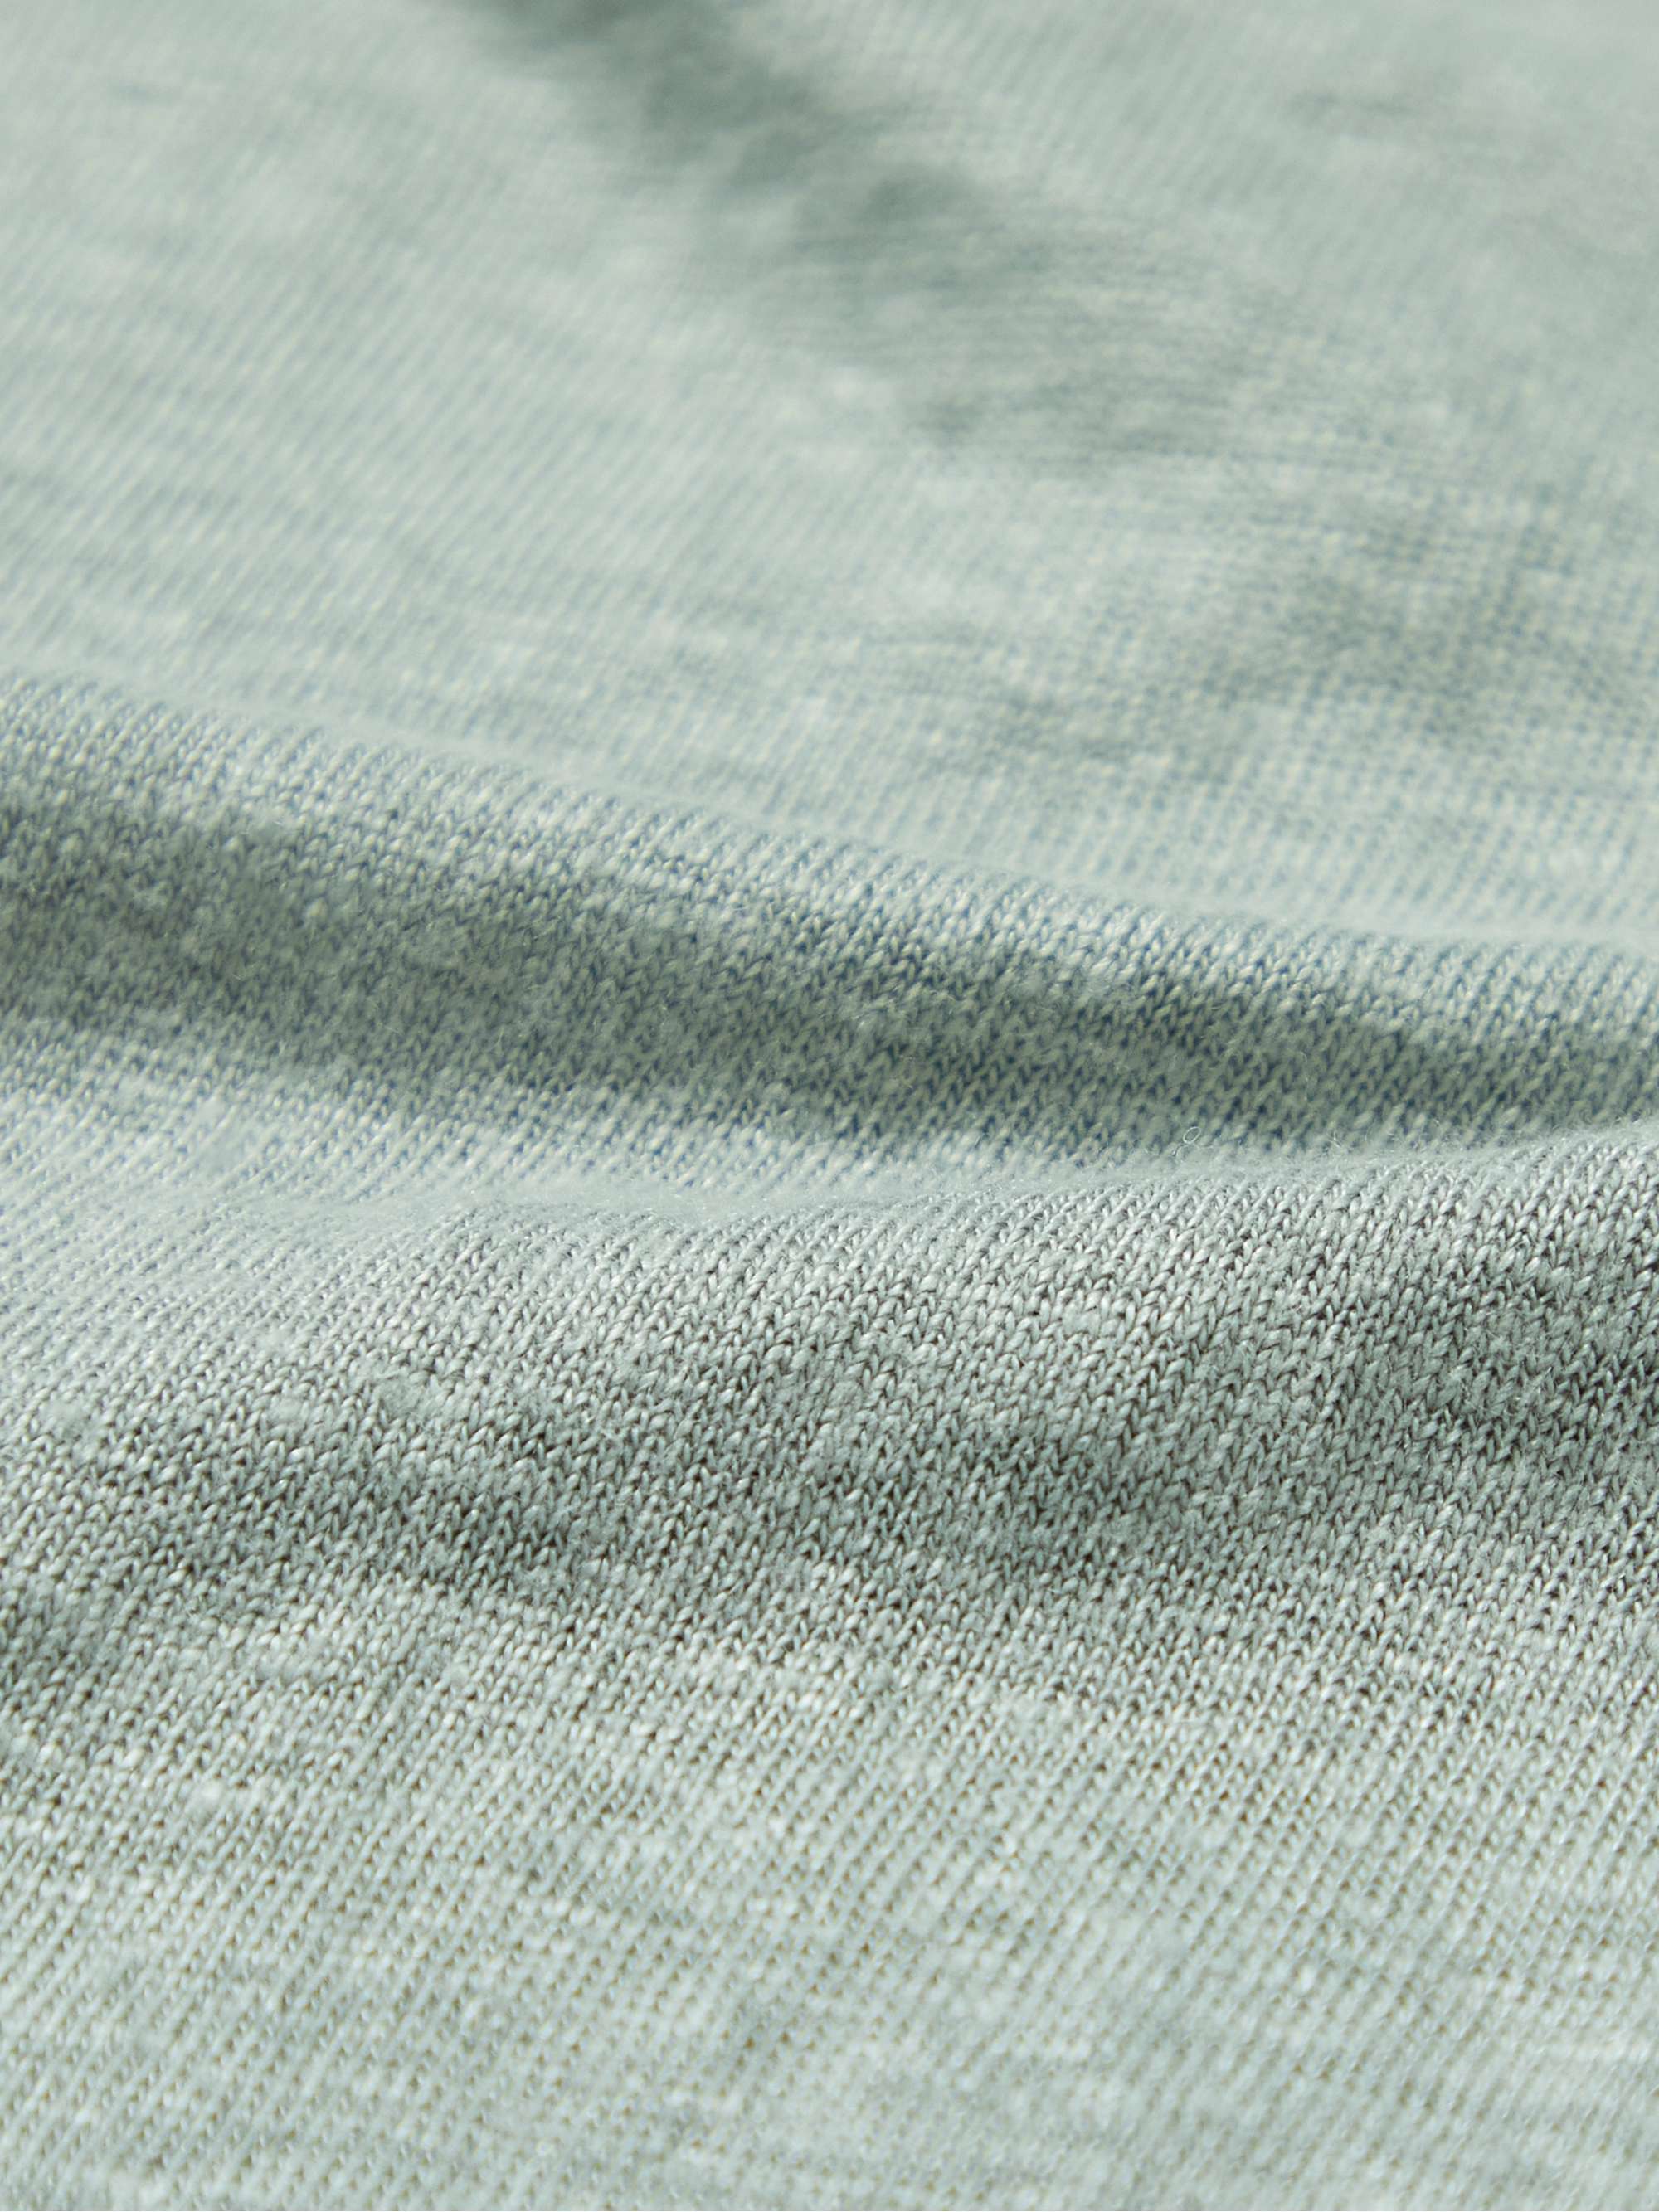 HARTFORD Linen-Jersey T-Shirt